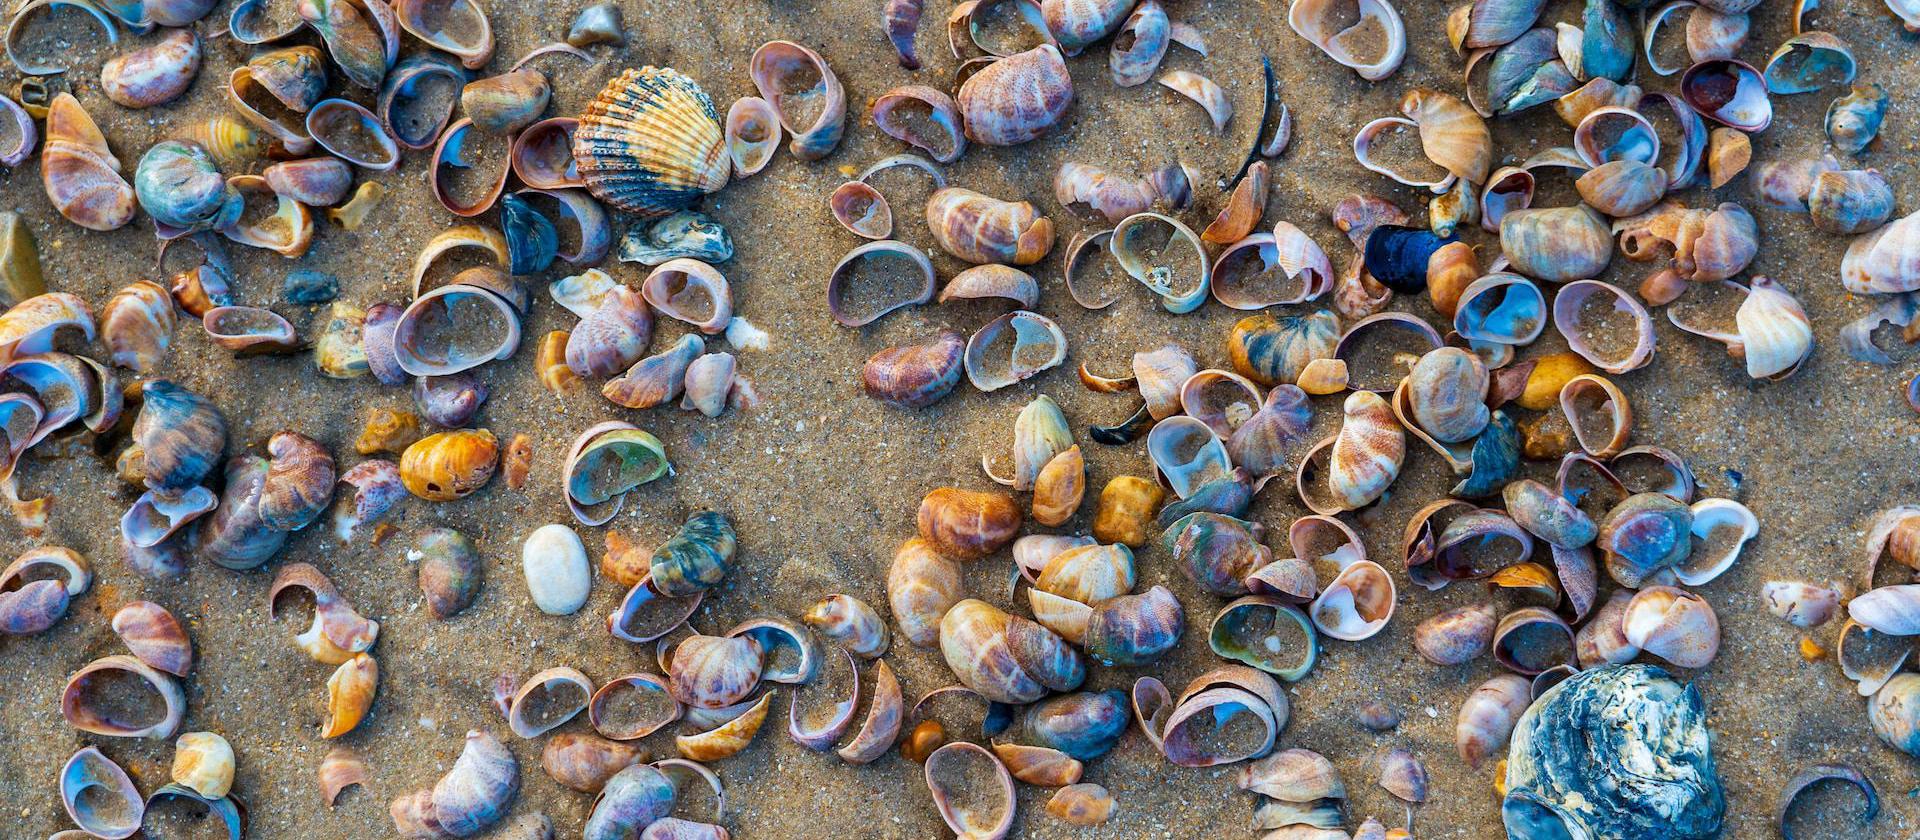 Image of brown and gray seashells on gray sand.